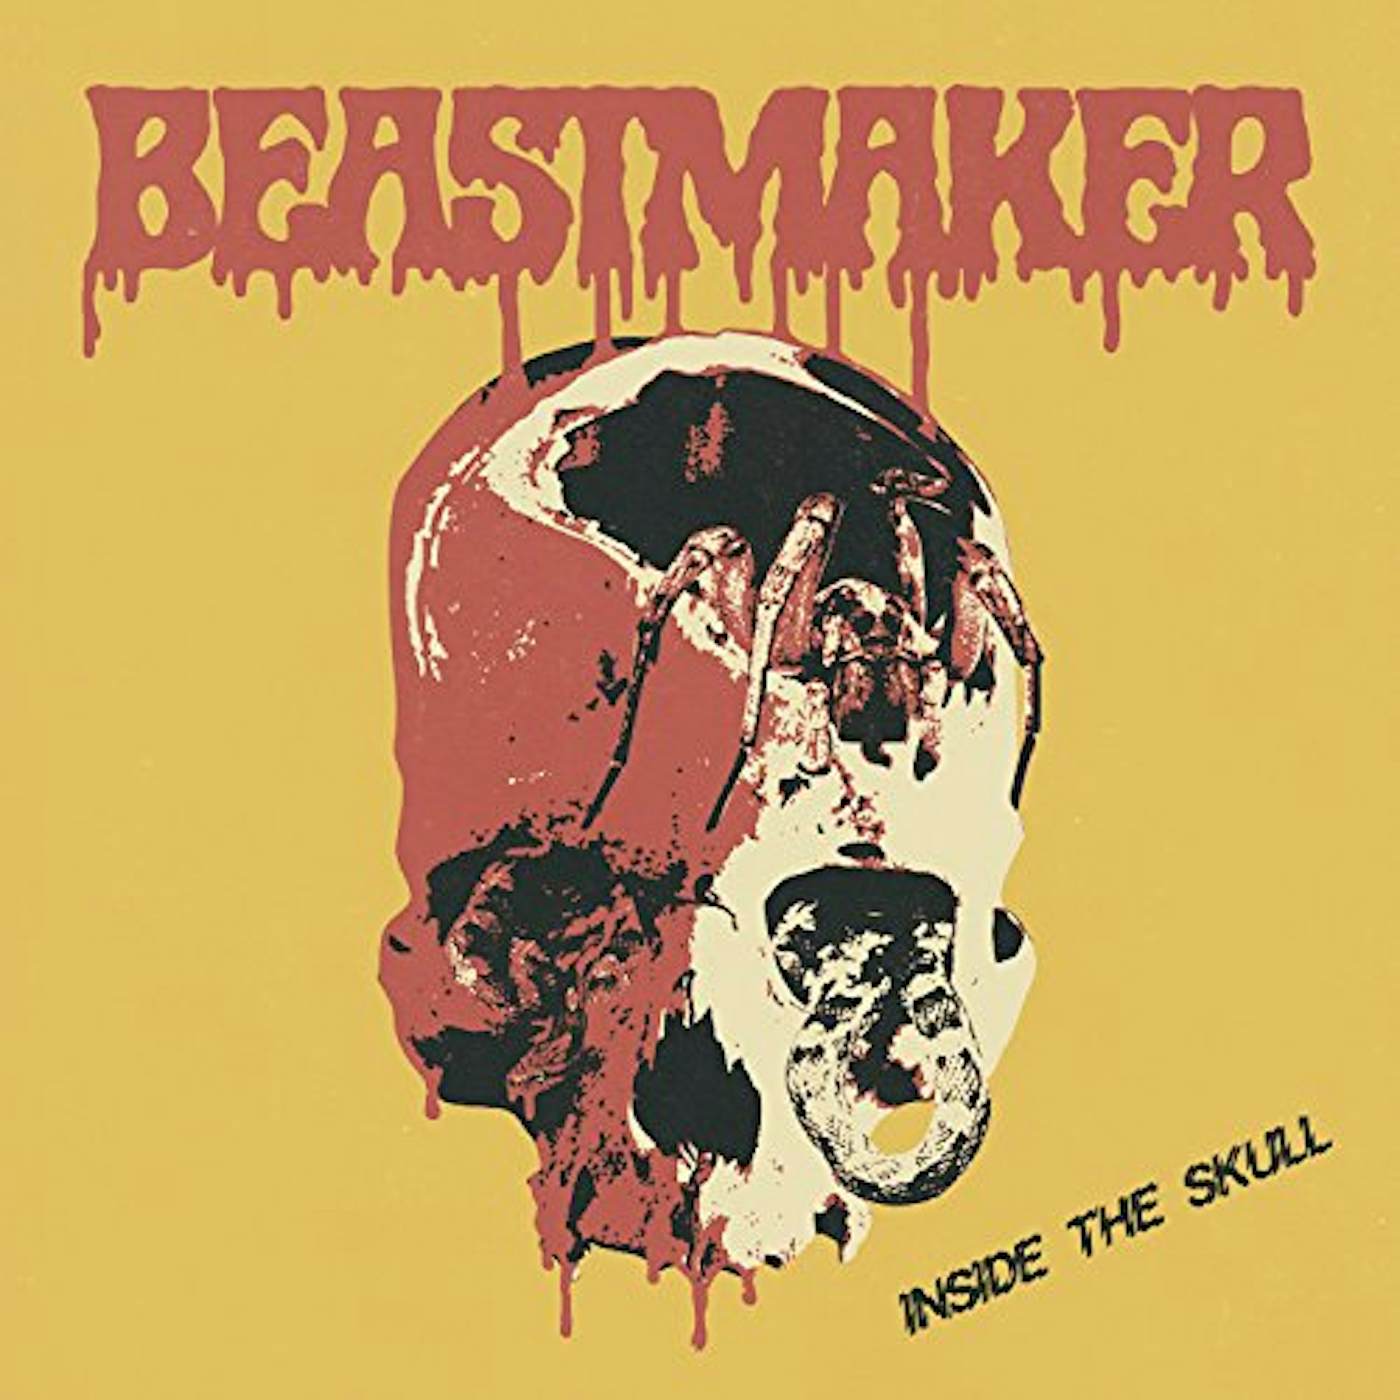 Beastmaker INSIDE THE SKULL CD